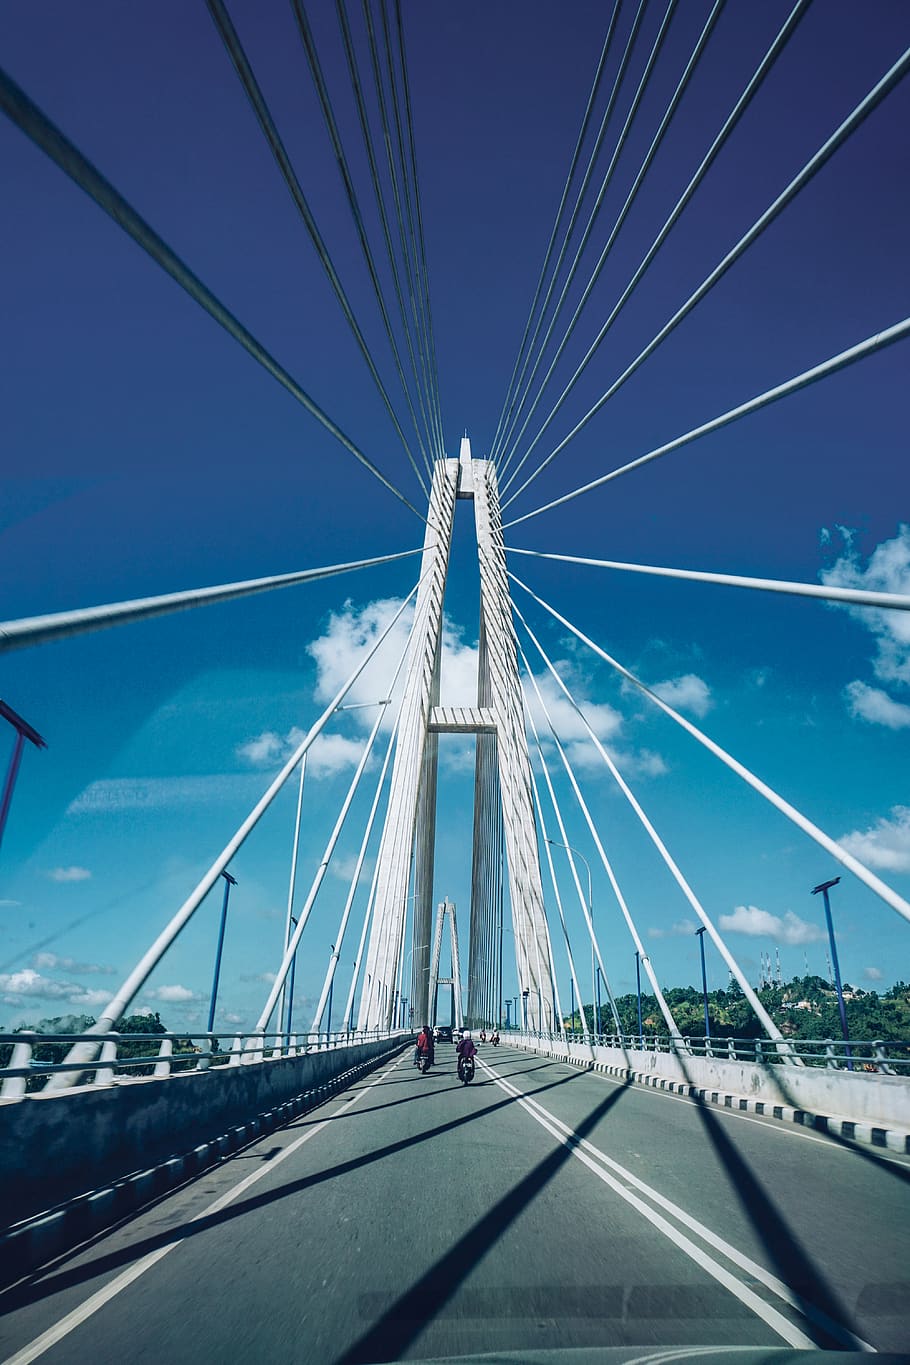 Indonesia, Jembatan Mahakam Kota Ii, Kalimantan, Mahkota - Self-anchored Suspension Bridge - HD Wallpaper 